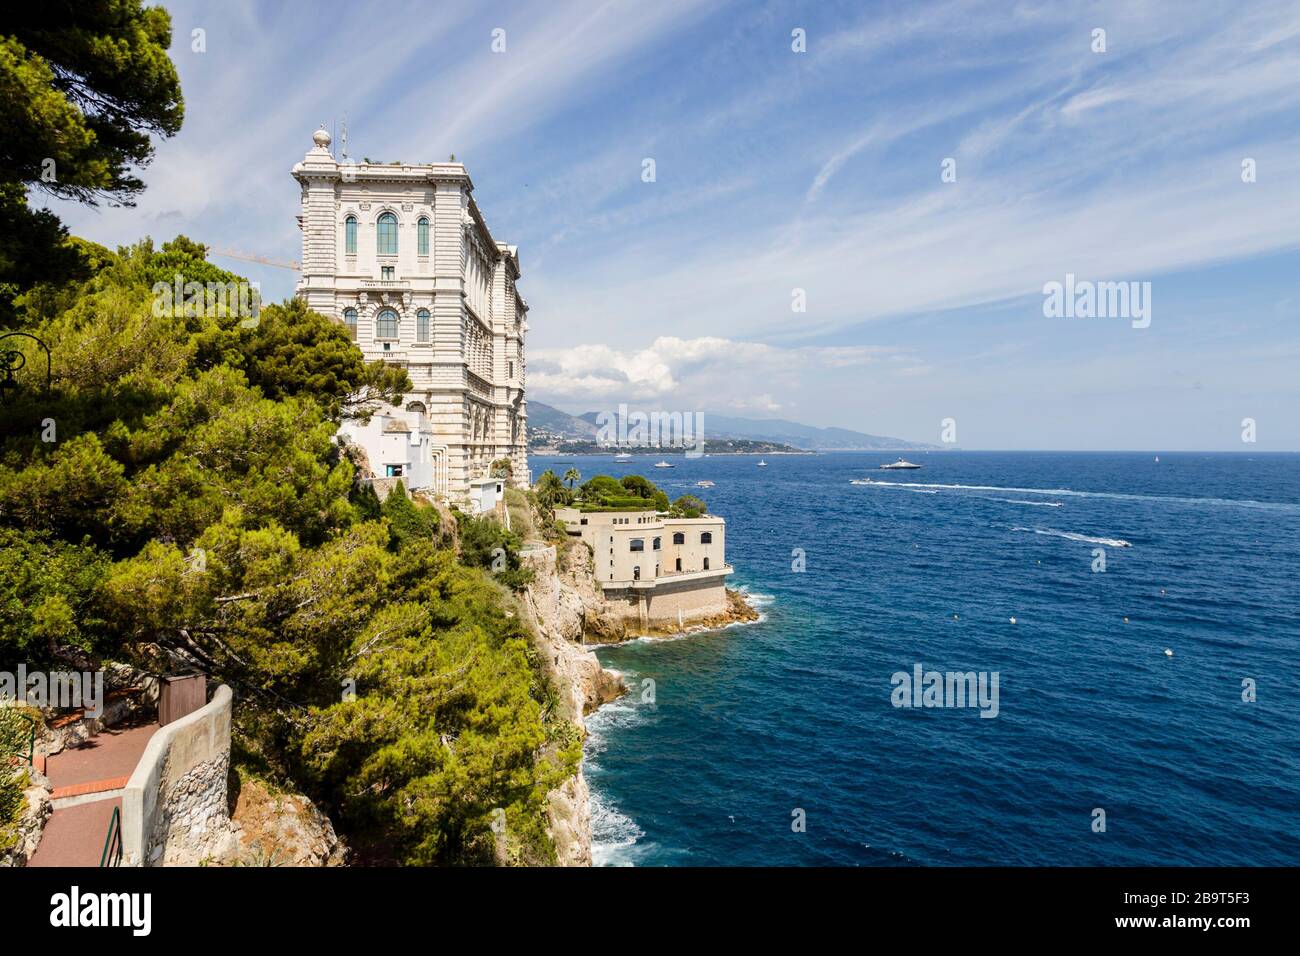 The Oceanographic Museum, Monte Carlo, Monaco Stock Photo